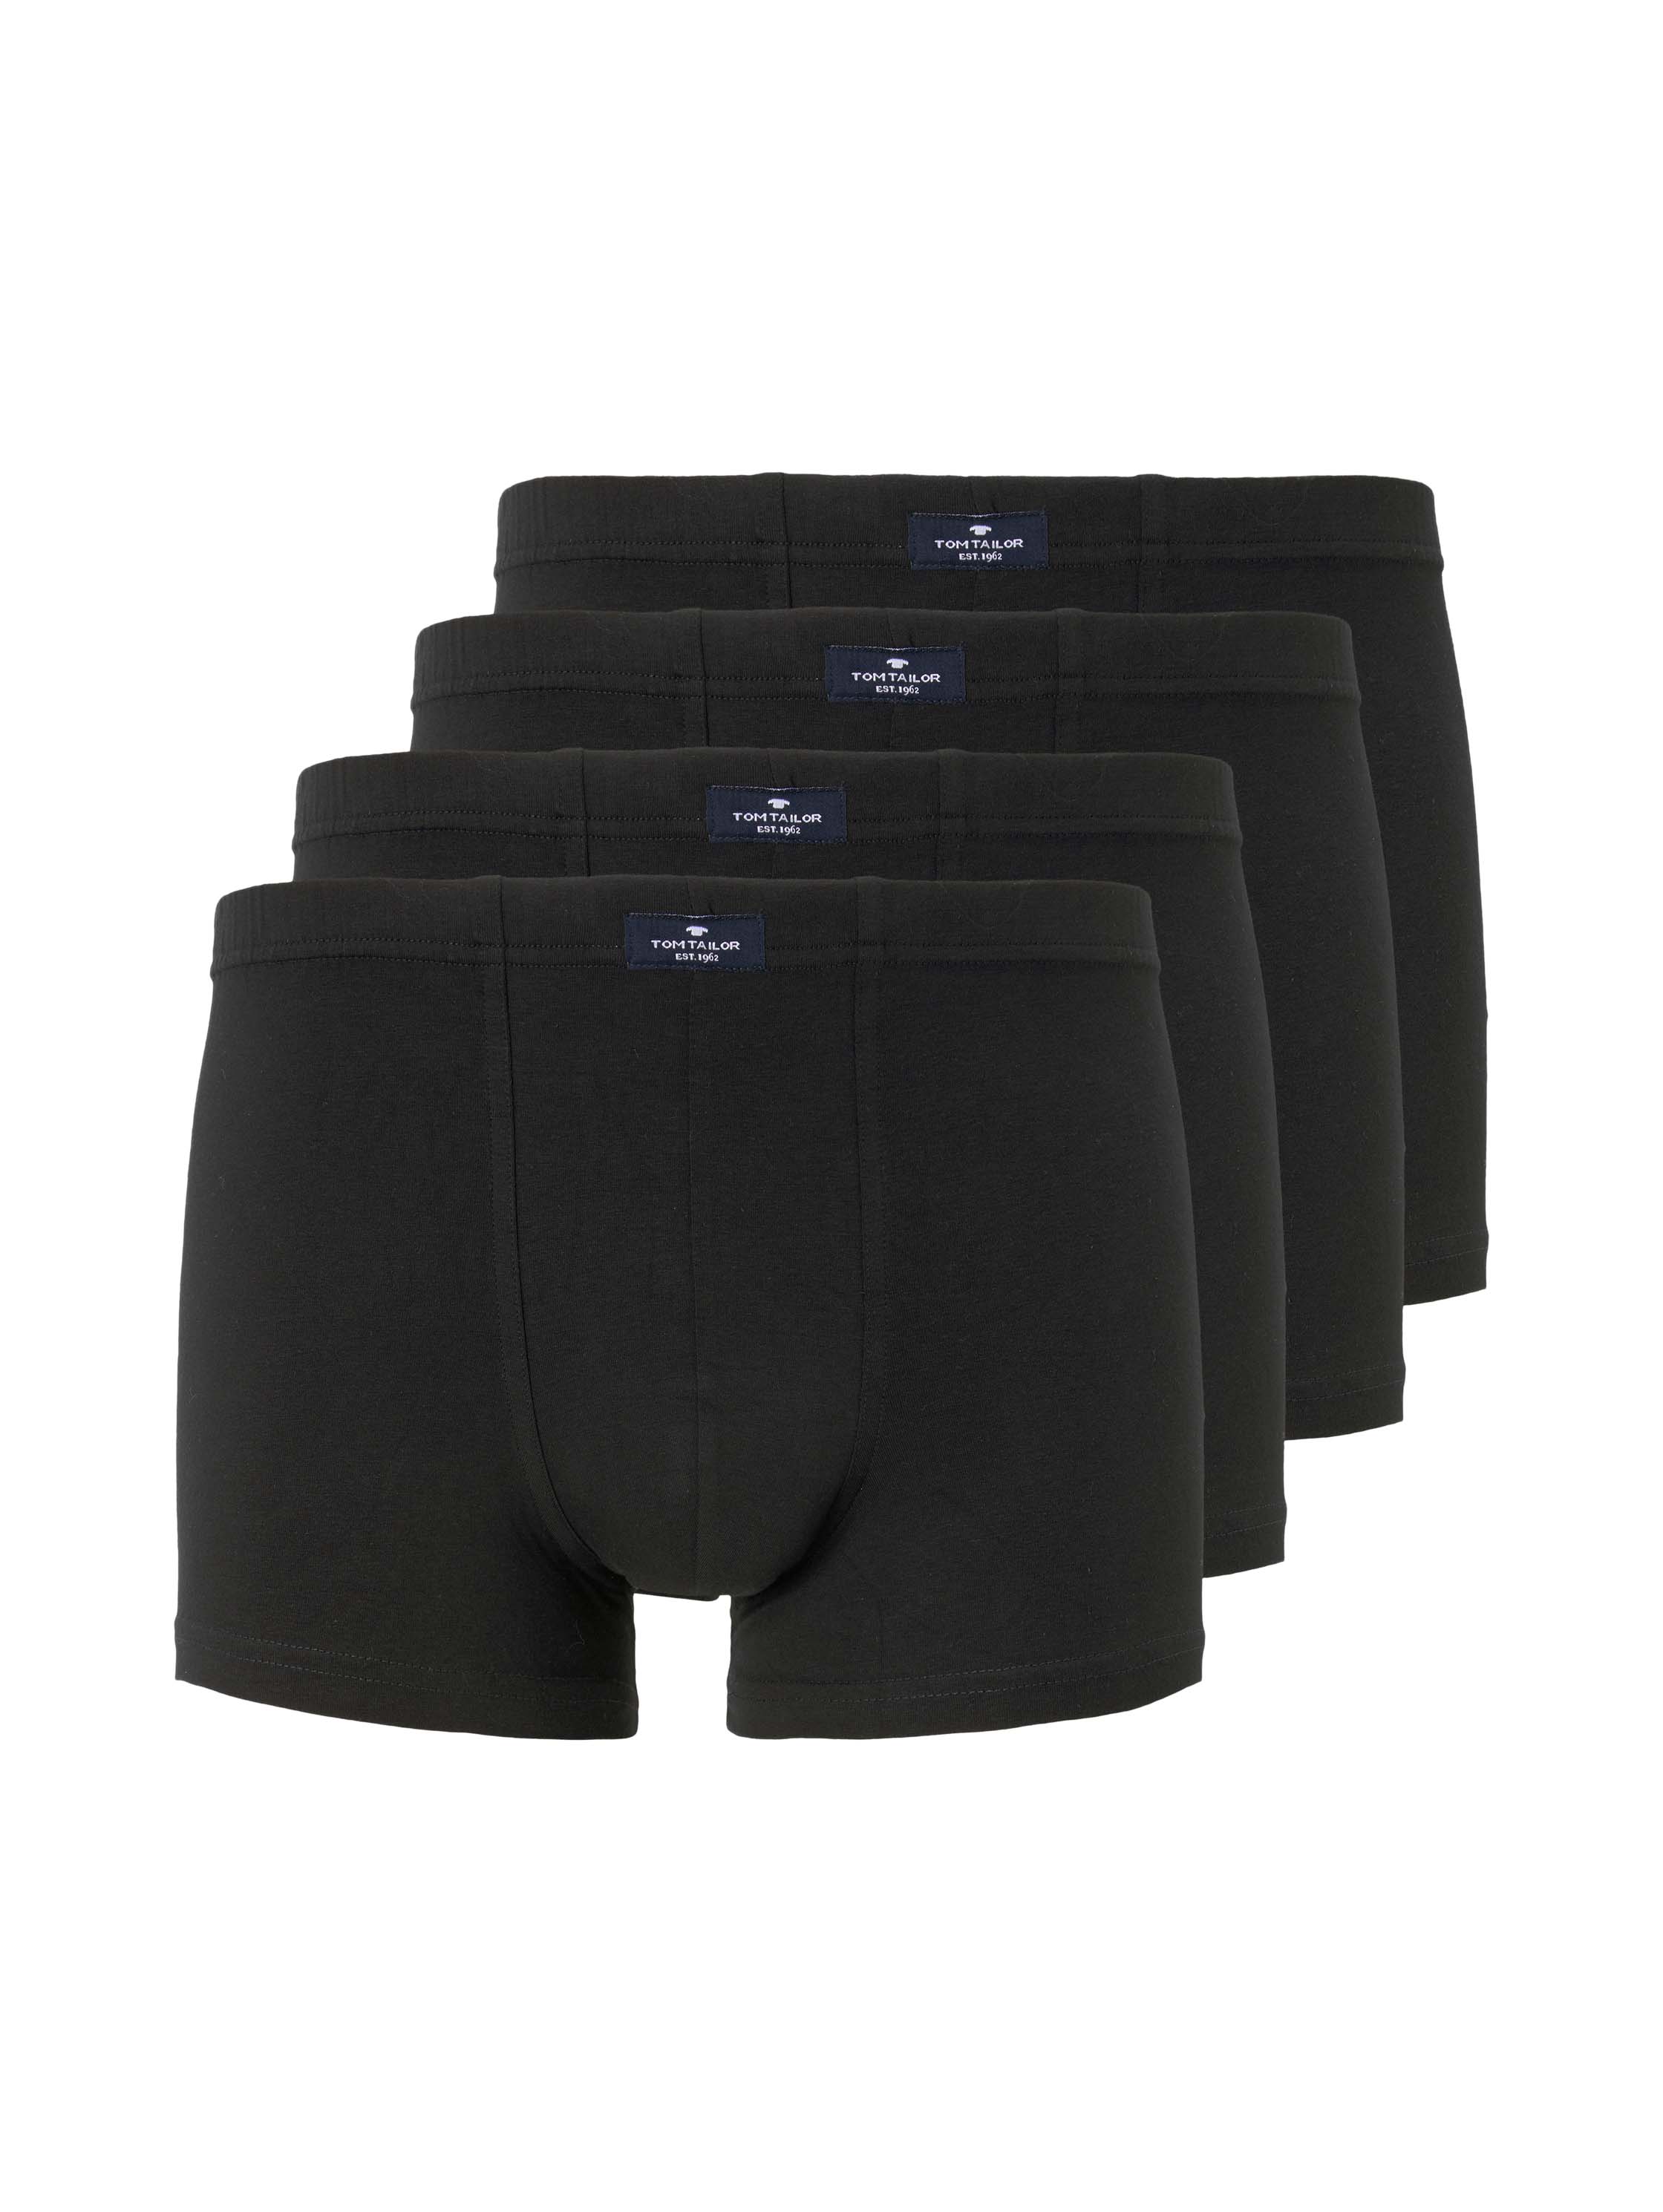 Pants 4er Pack, schwarz-dunkel-uni